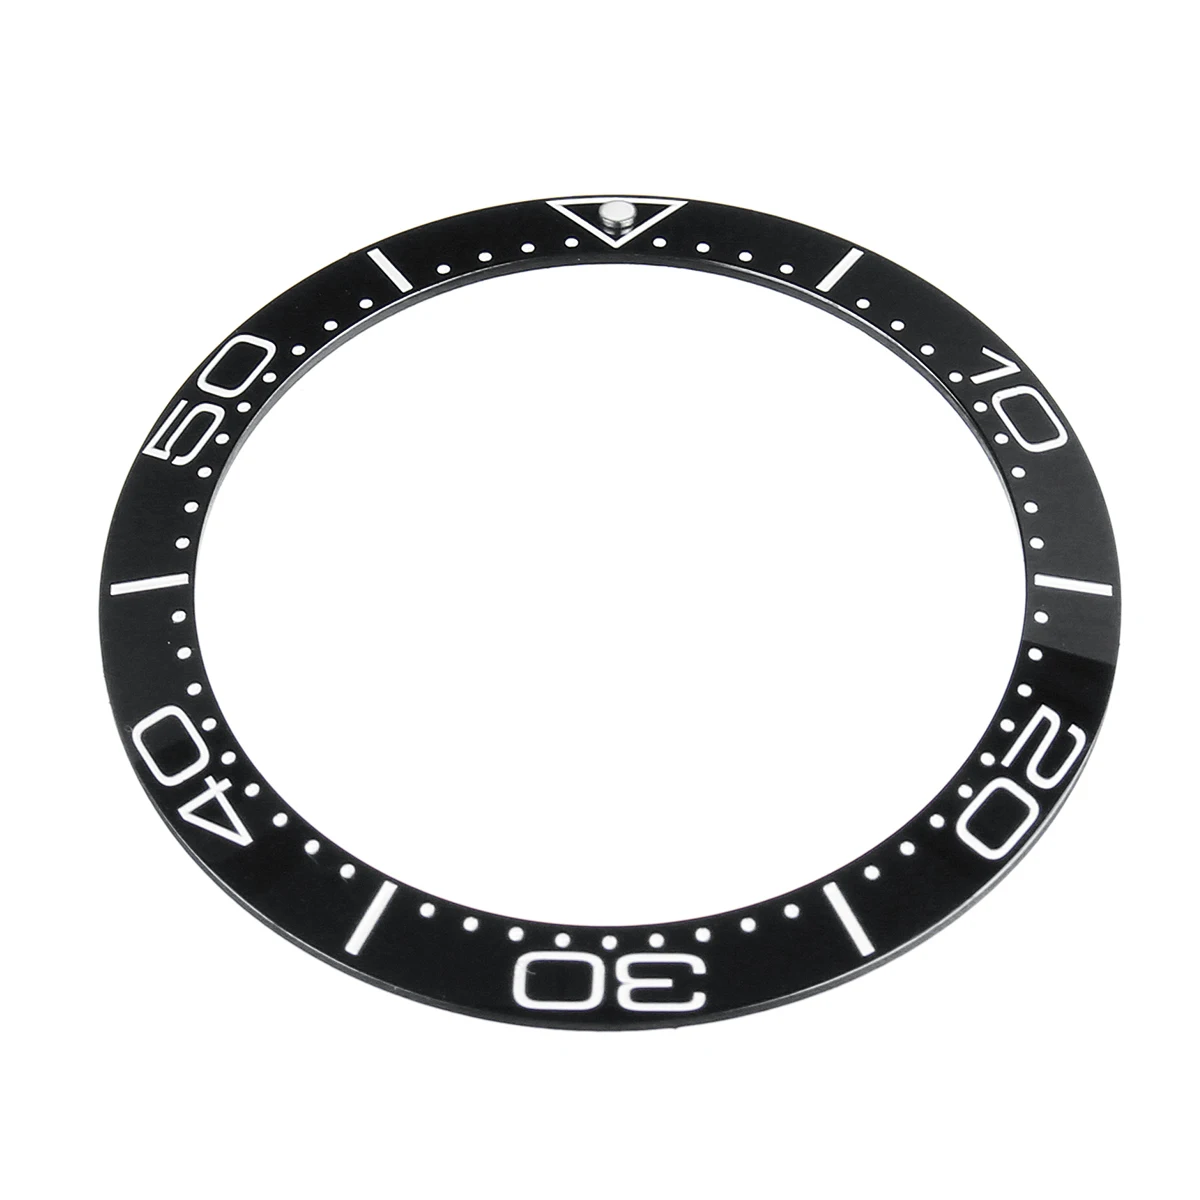 Универсальный 38 мм чехол для часов керамический ободок вставки аксессуары для Sei ko SKX007/009 часы - Цвет: Черный